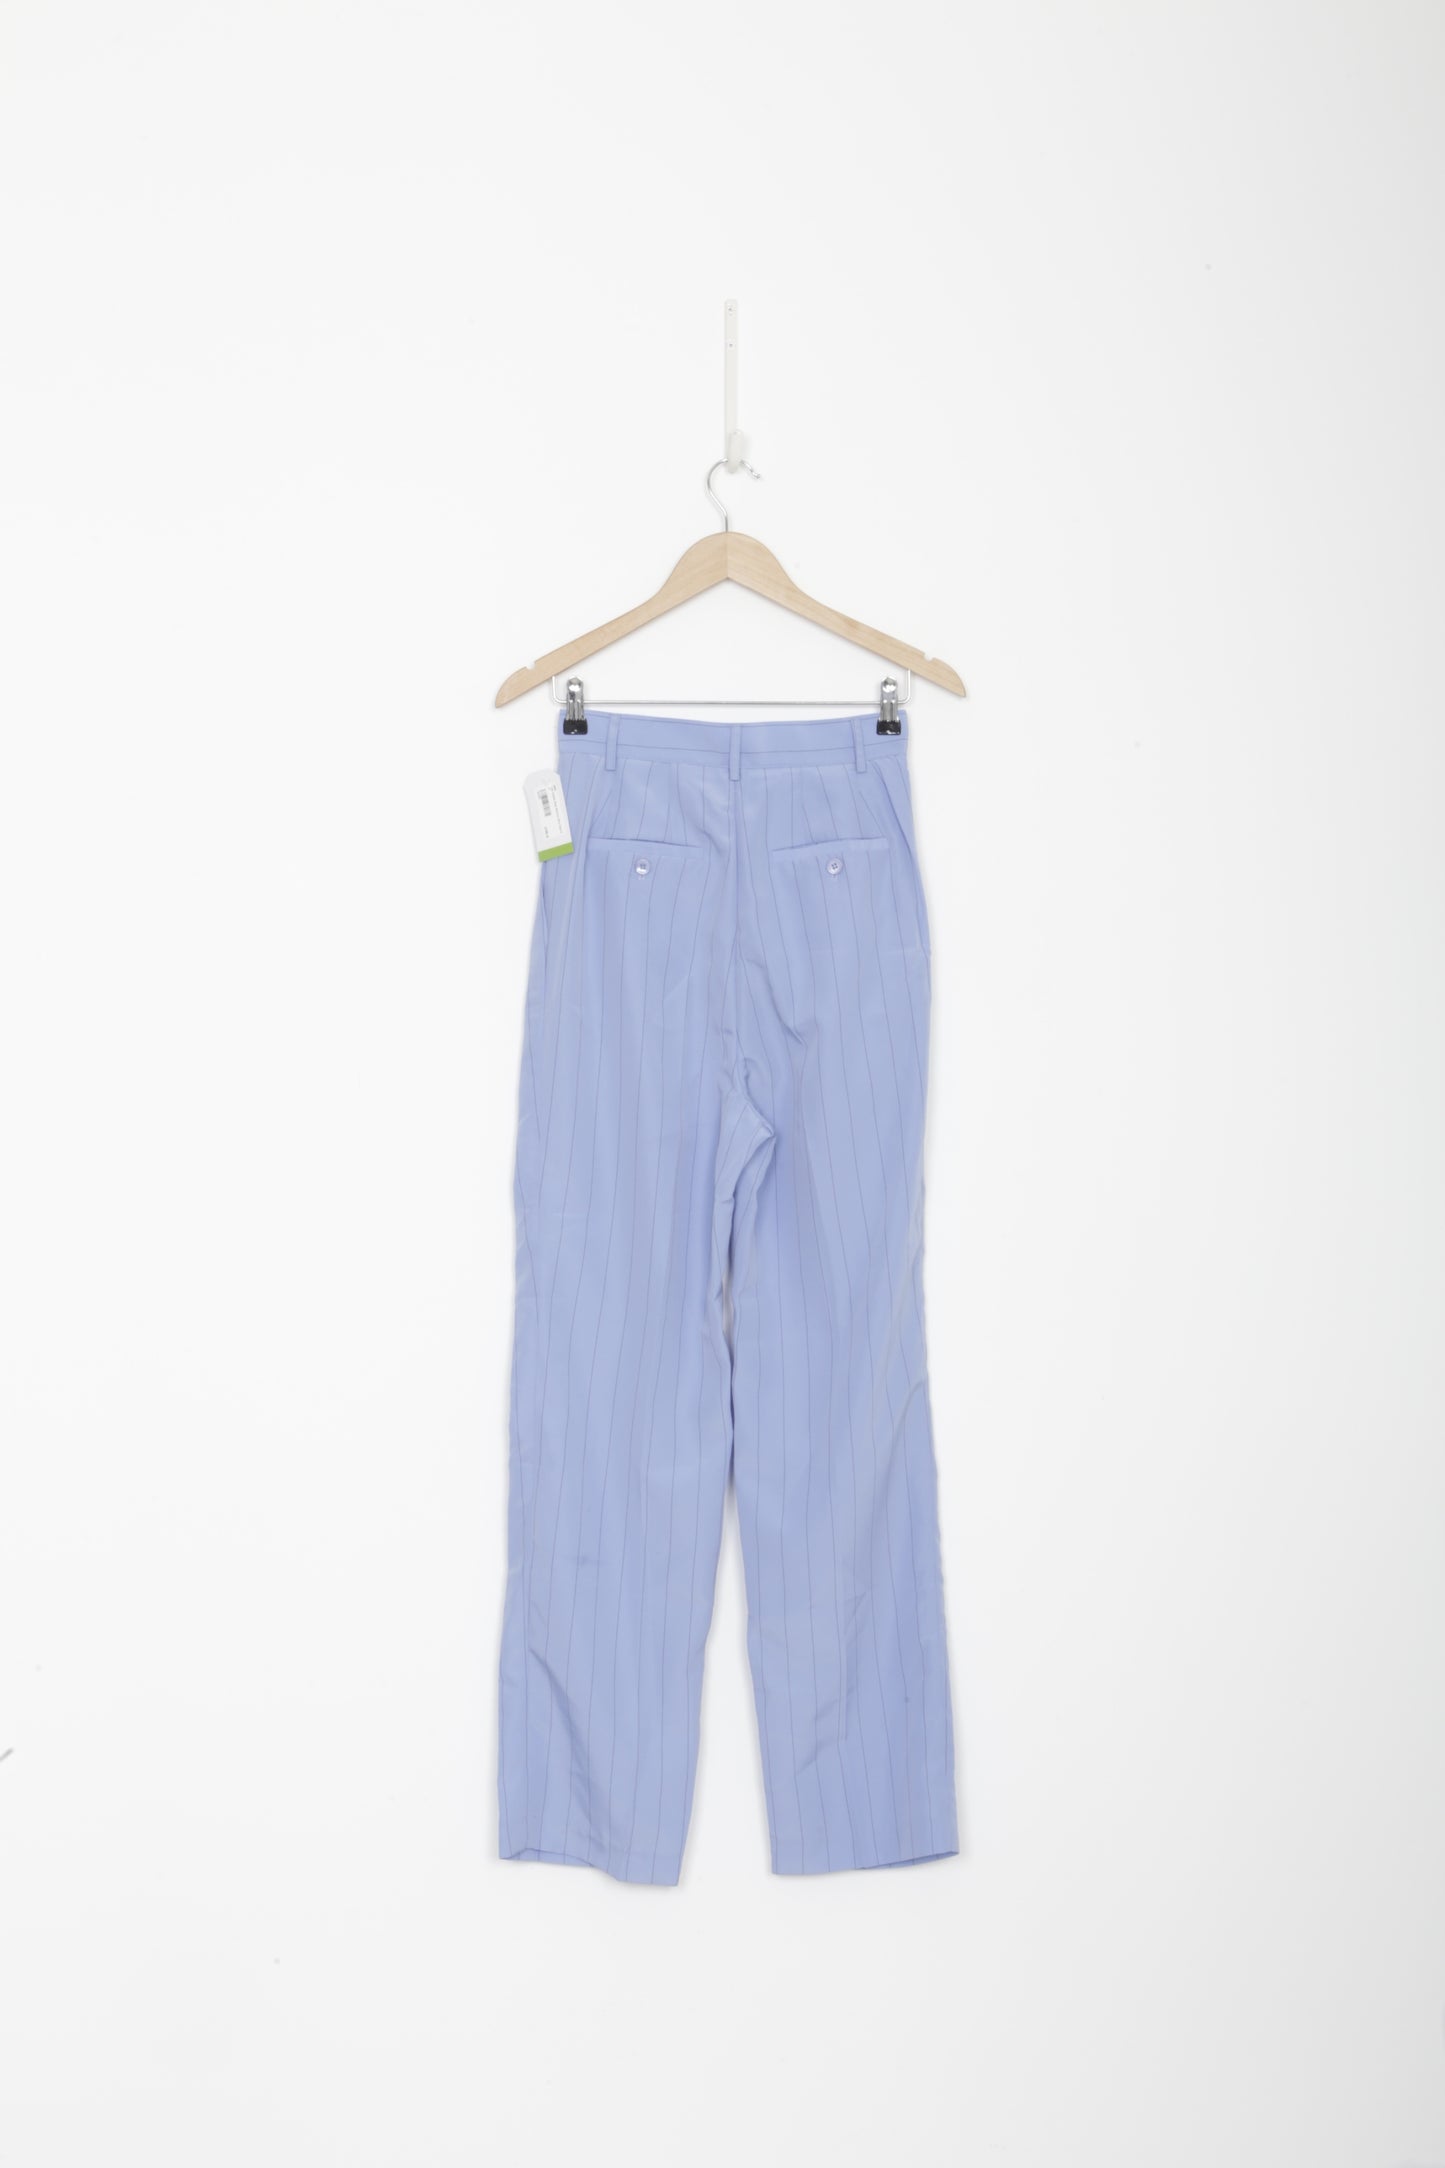 The Frankie Shop Womens Blue Pants Size S